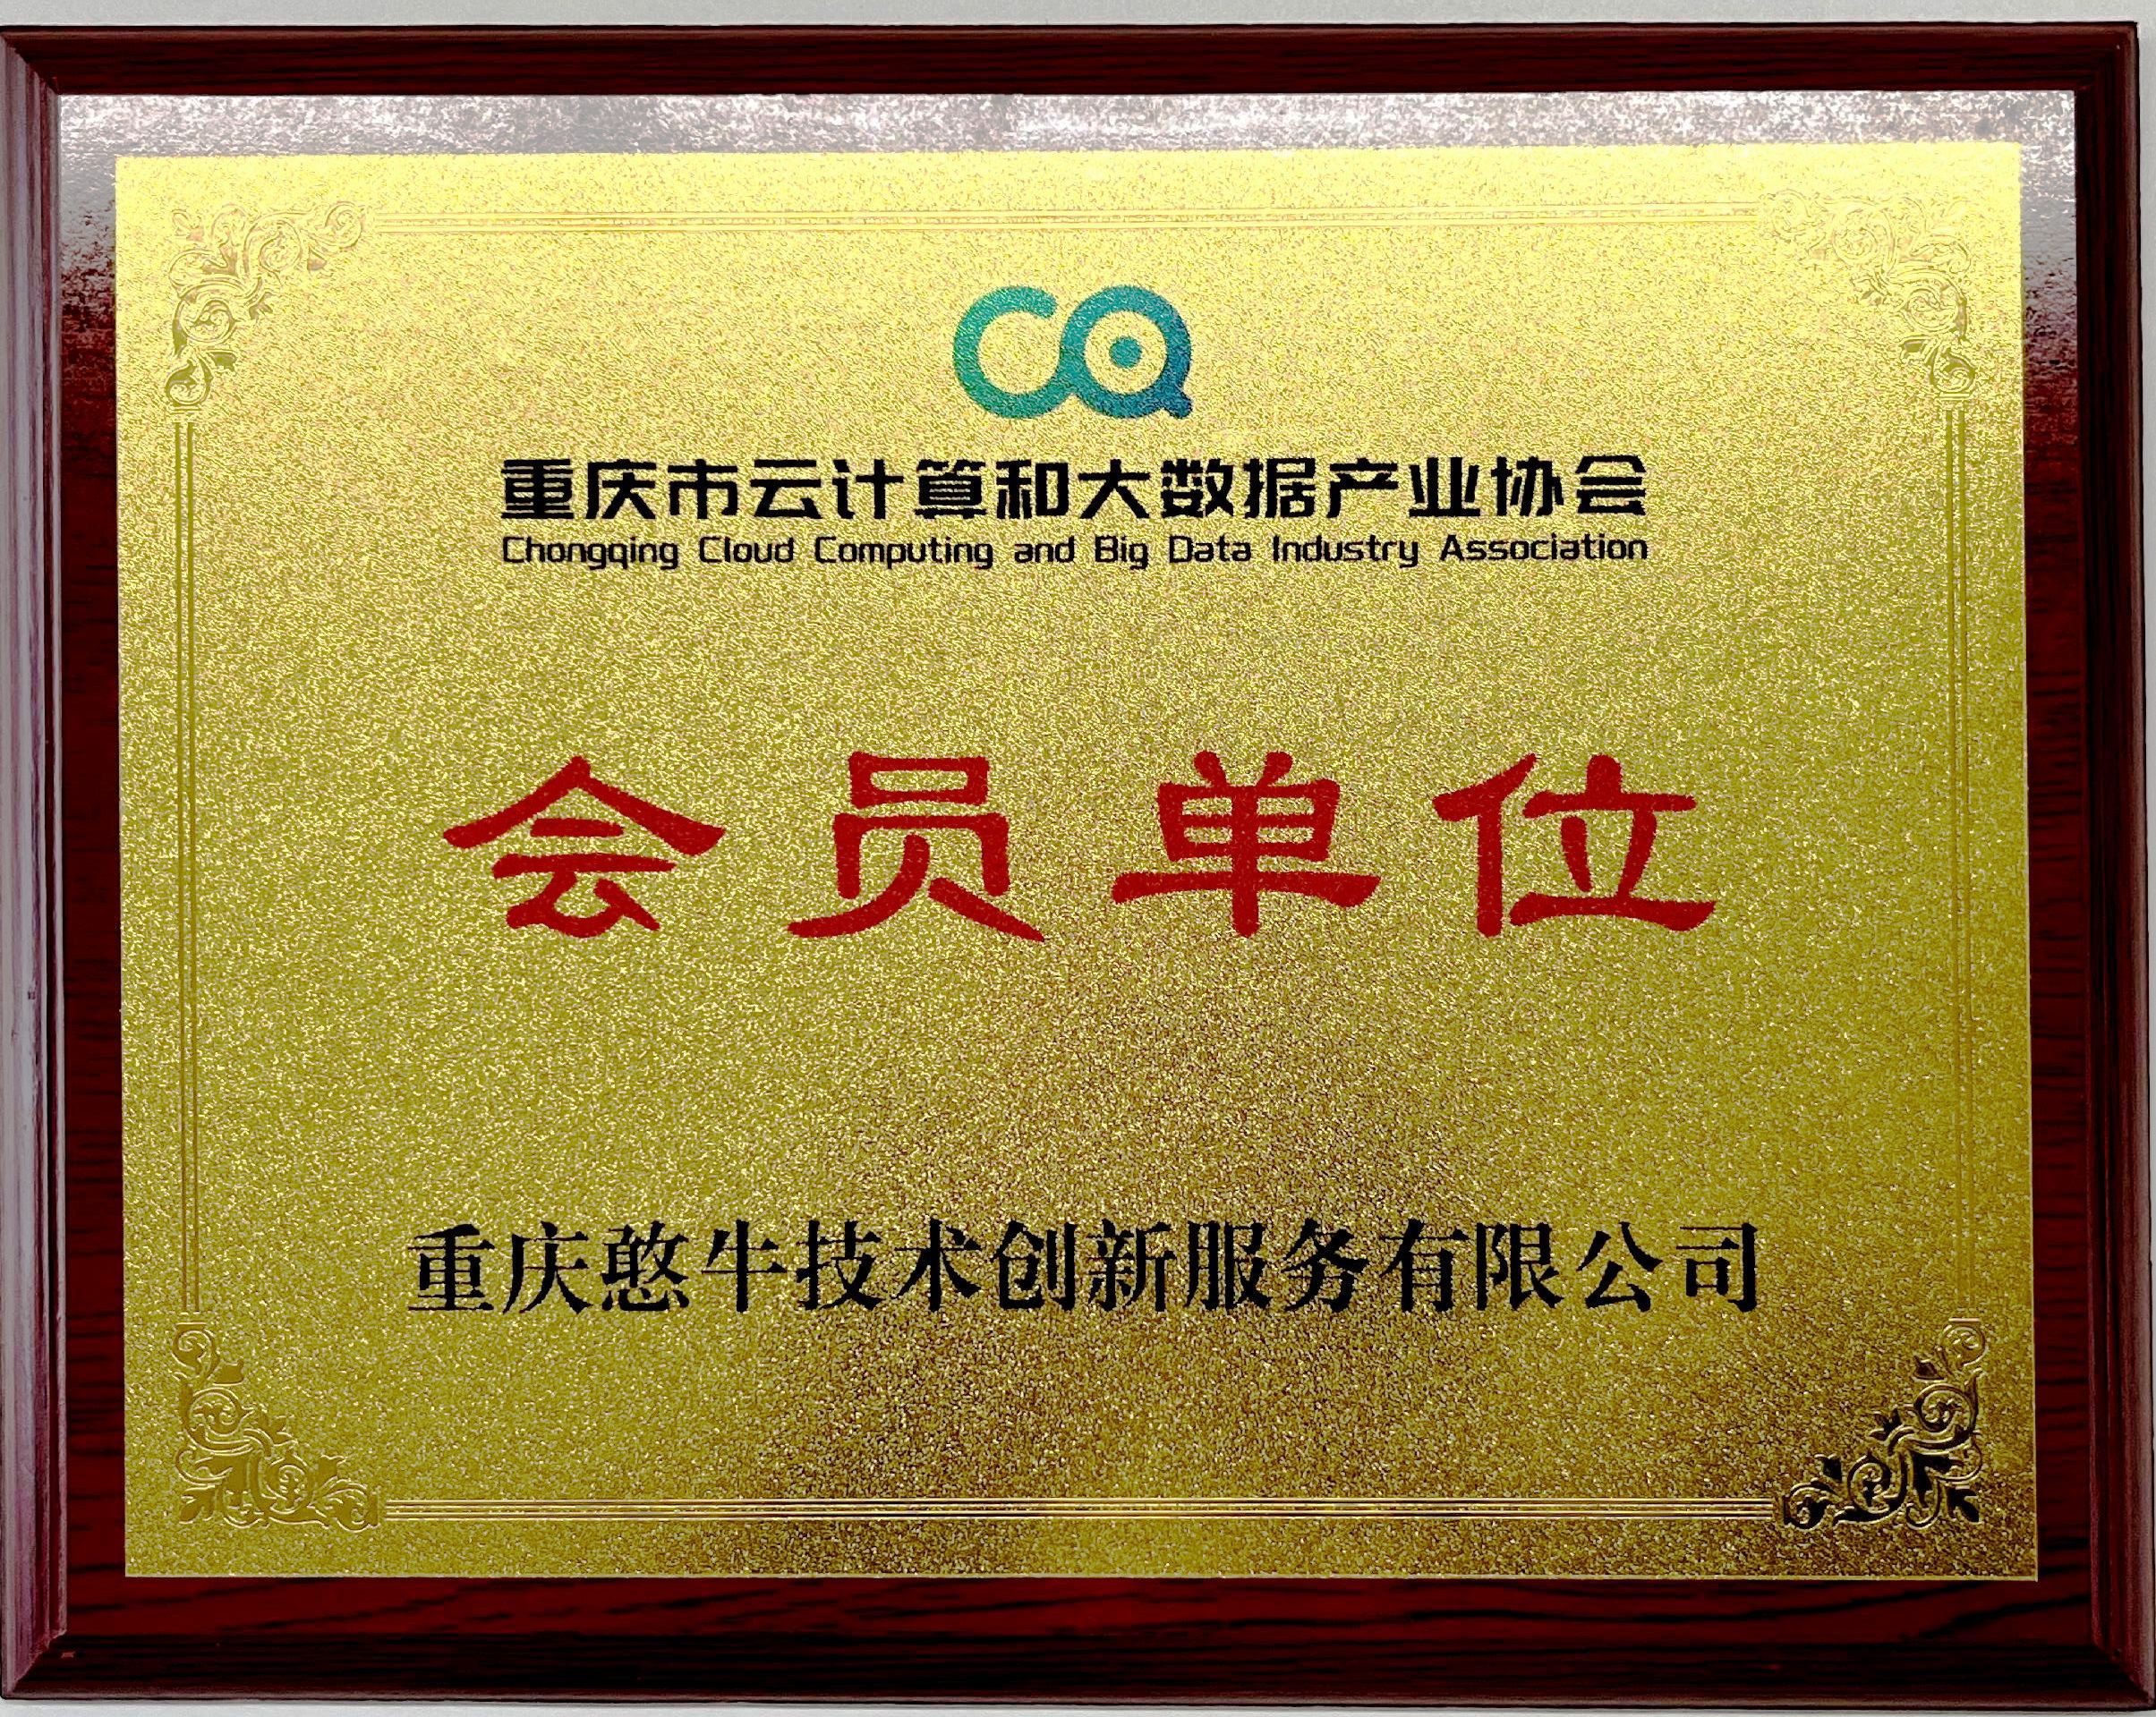 重庆市云计算和大数据产业协会会员单位